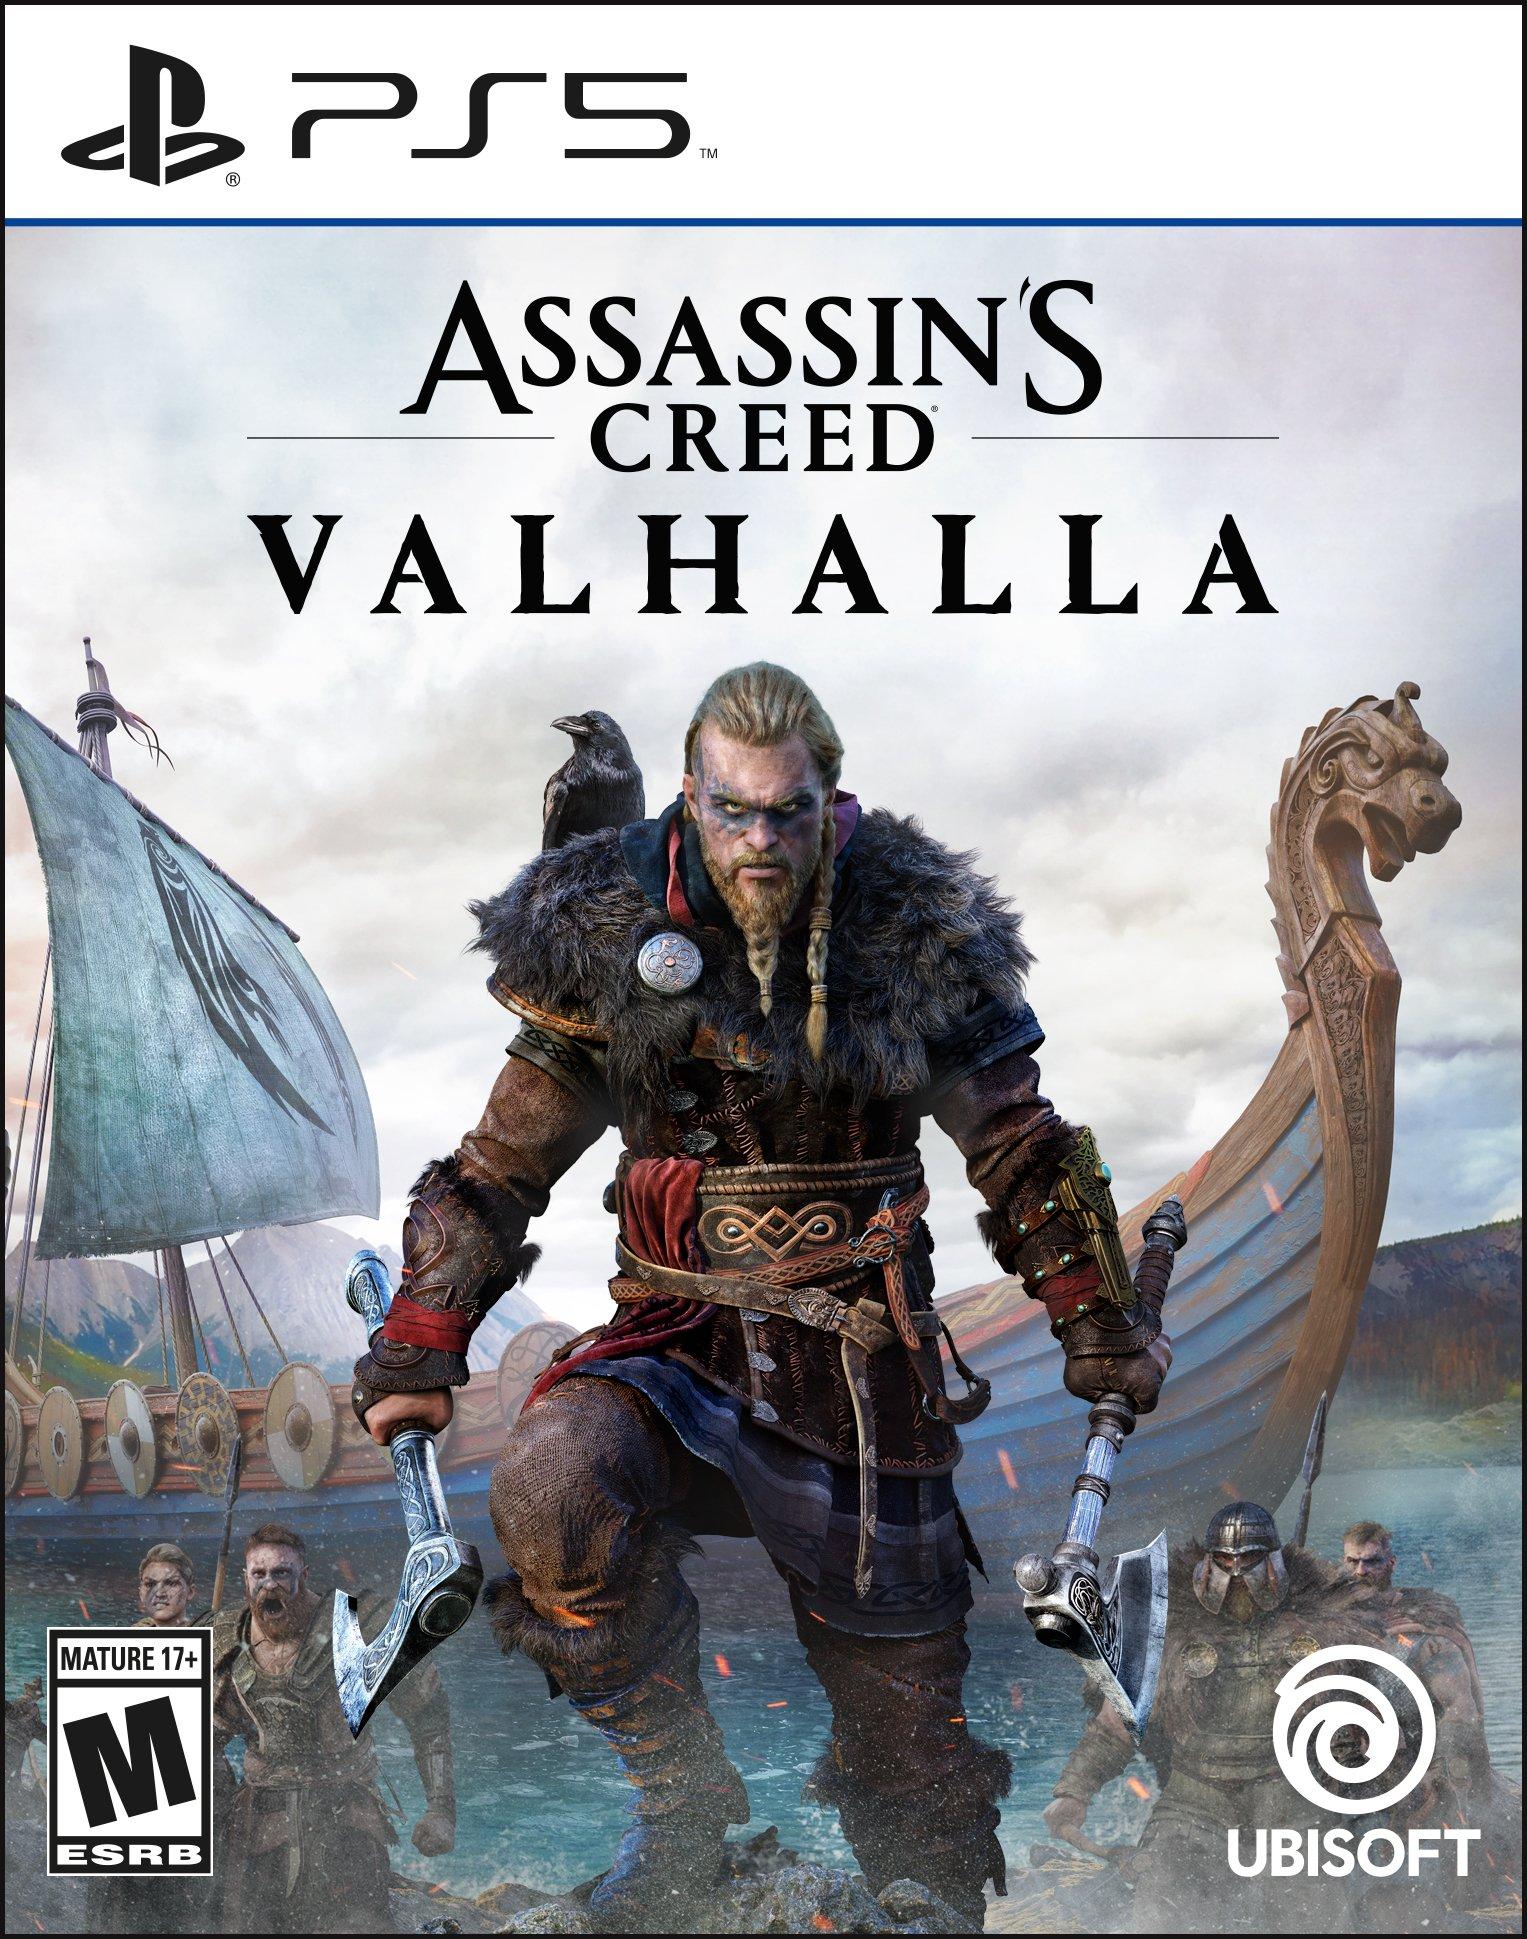 Assassin's Creed Valhalla PS4 Ragnarok Edition w PS5 Upgrade New